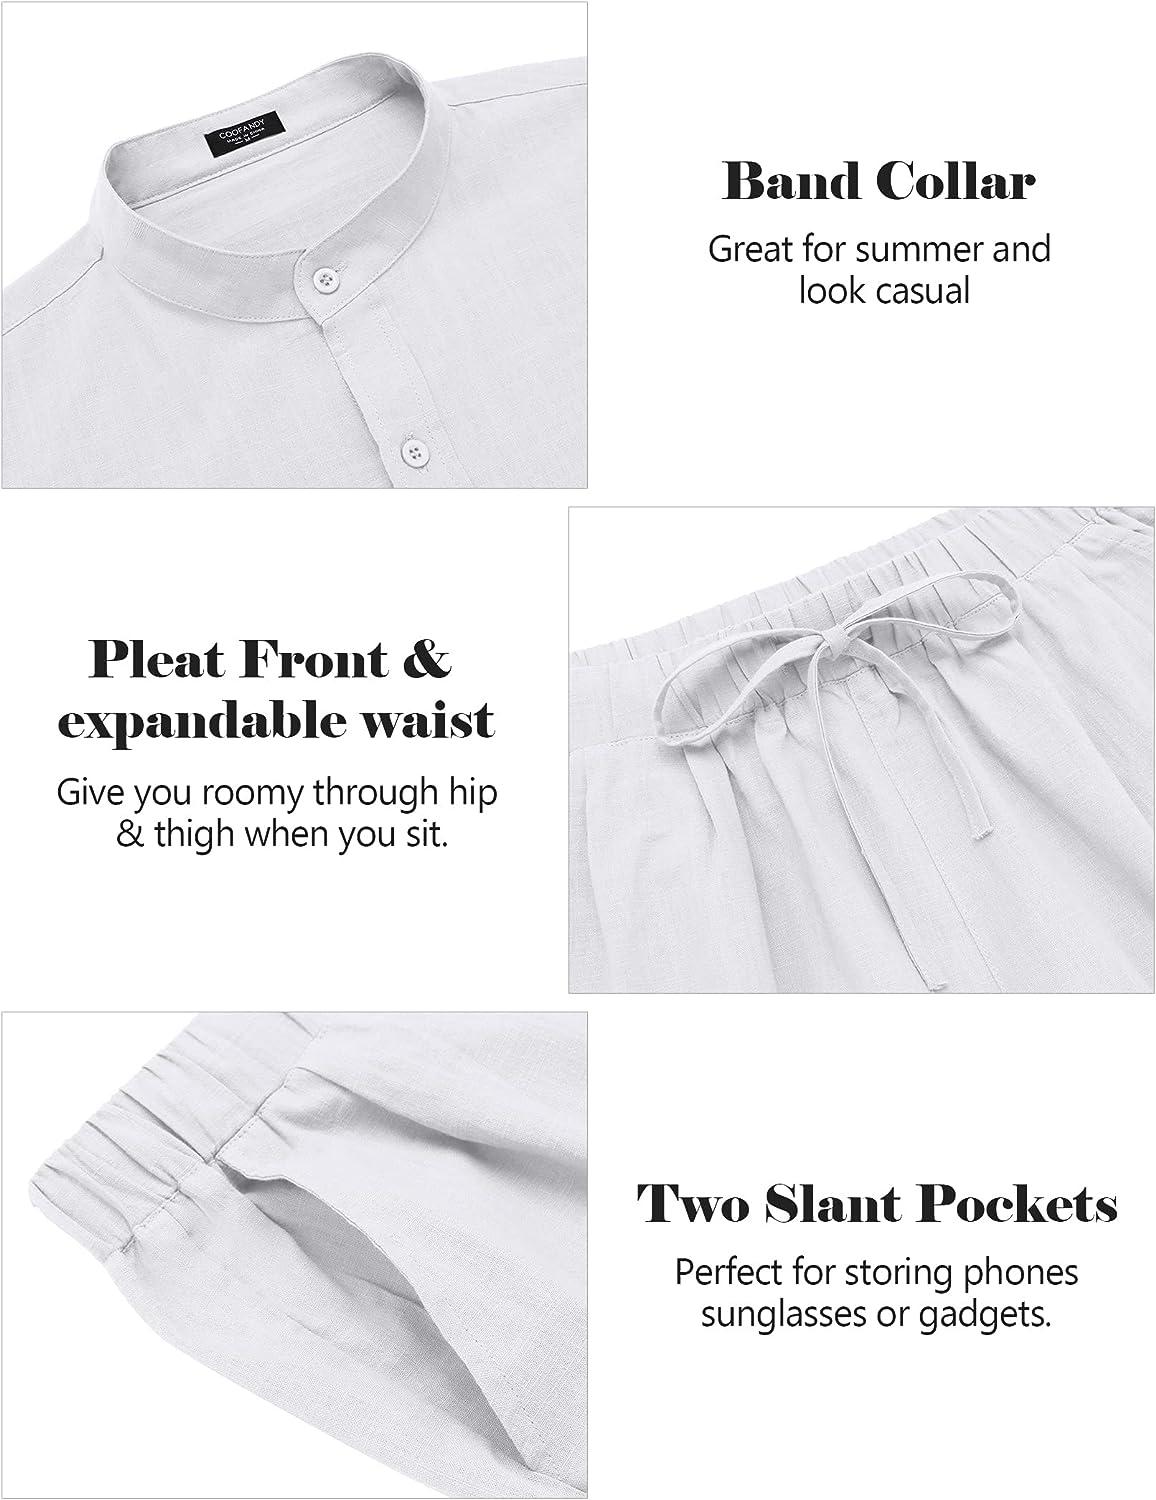 COOFANDY Linen Sets For Men 2 Piece Button Down Shirt Long Sleeve